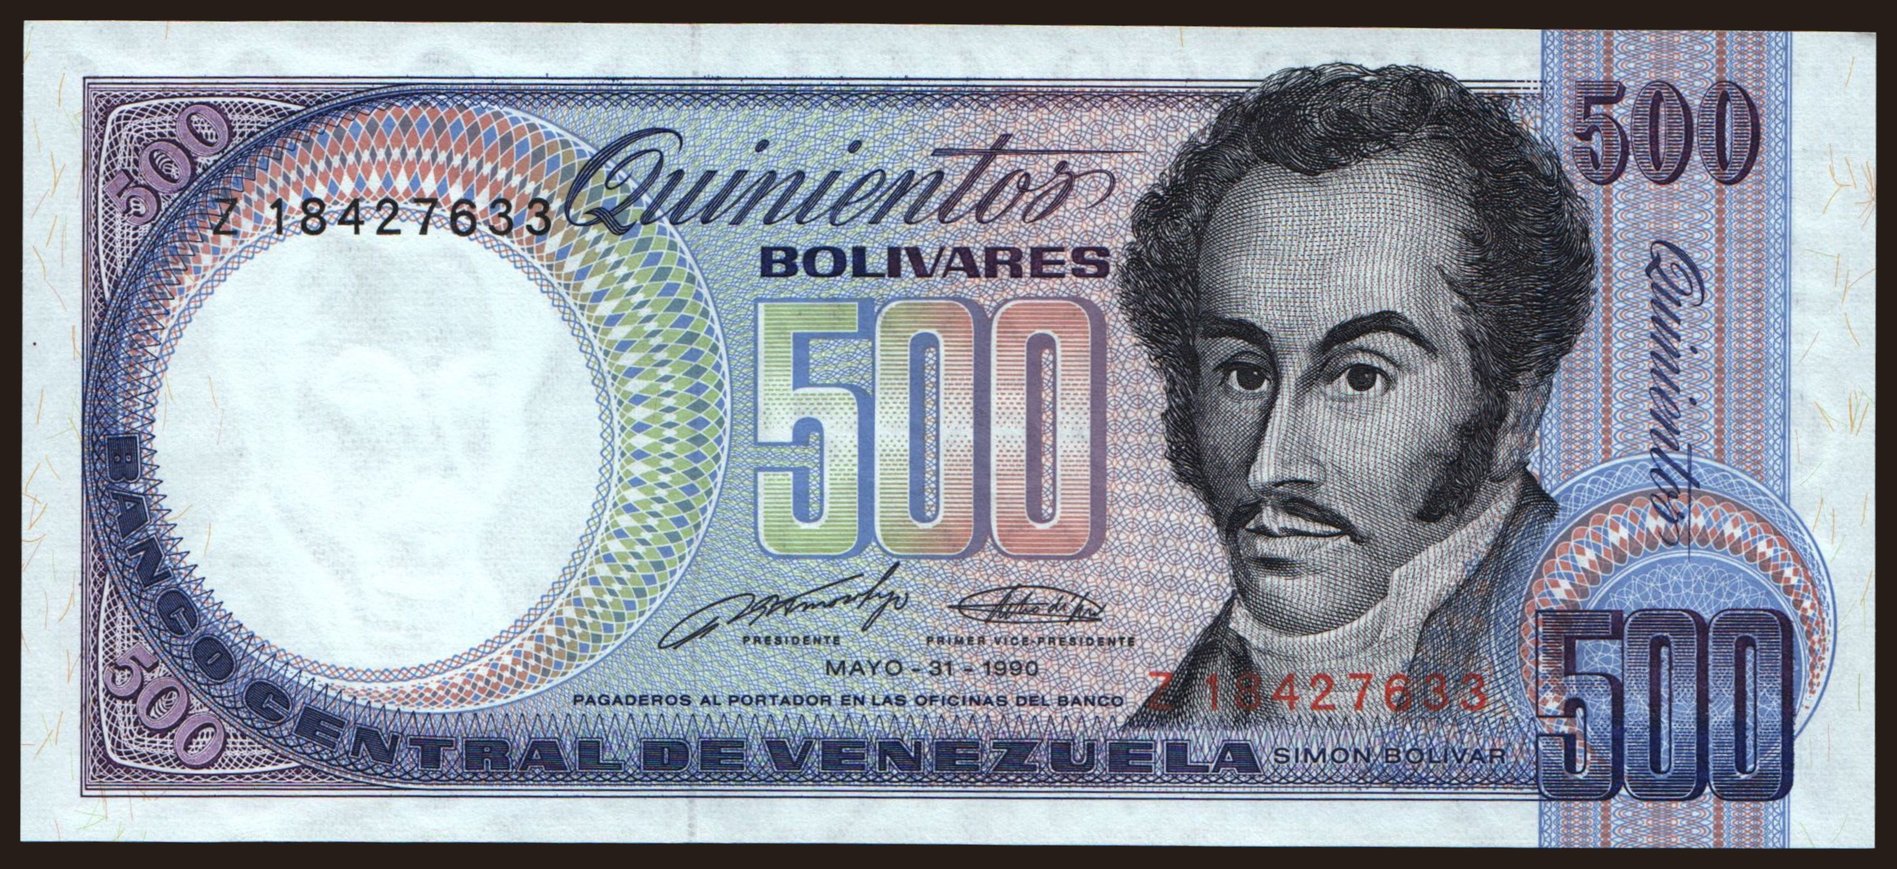 500 bolivares, 1990